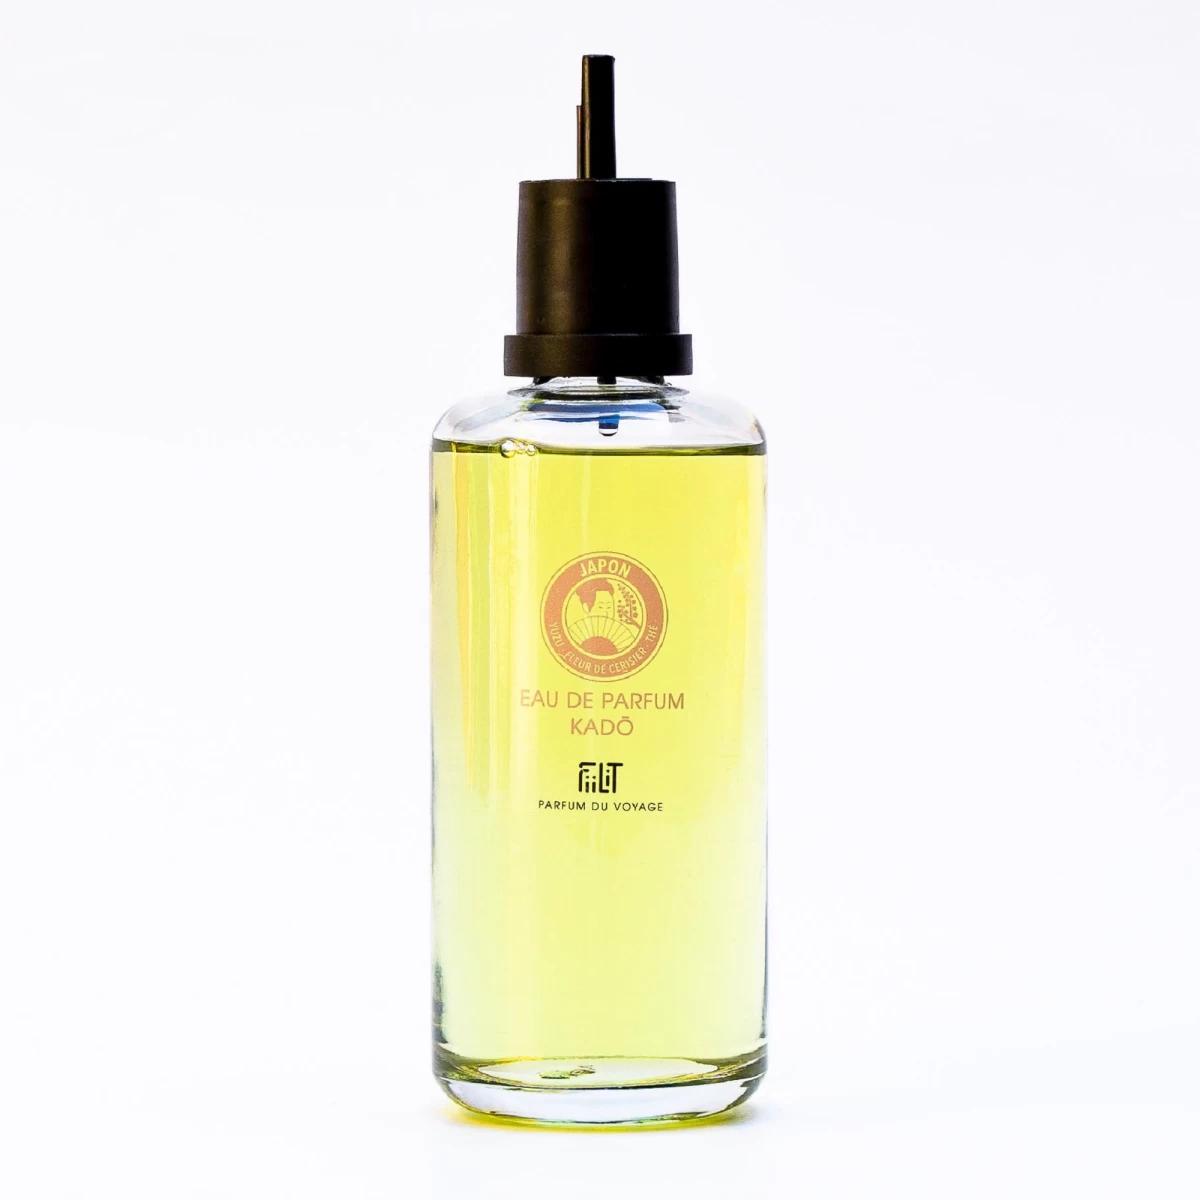 detailed_14_eau-de-parfum-kado-japon-200ml-refill-fiilit-parfum-du-voyage-2.webp